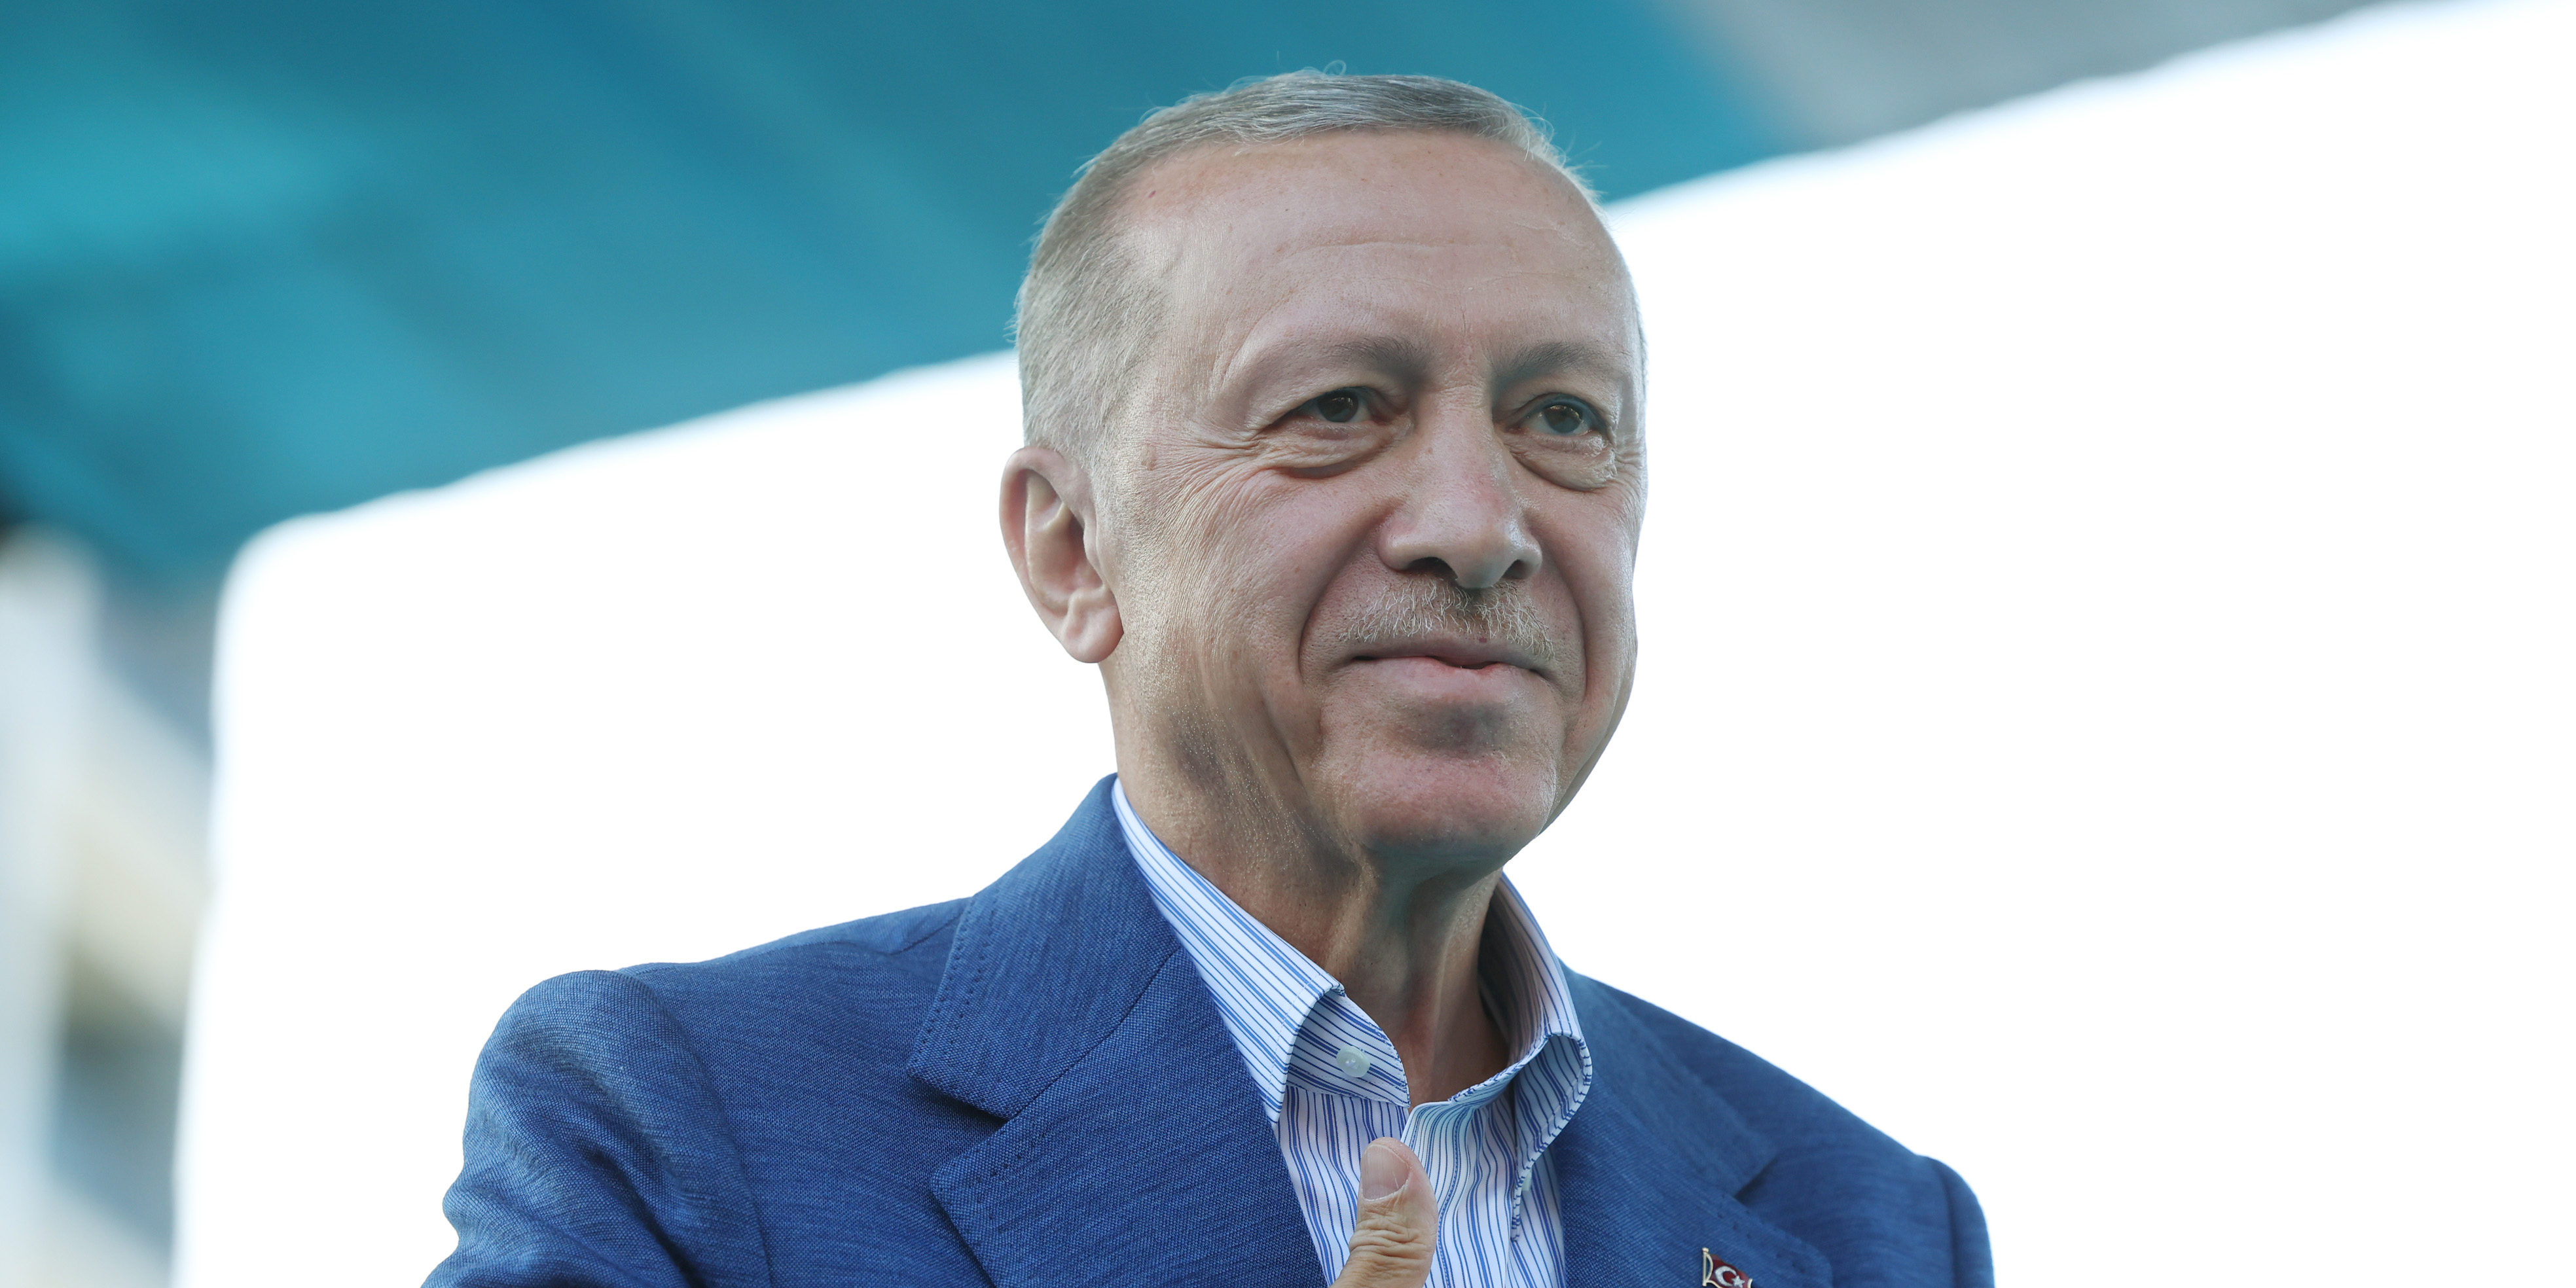 Cumhurbaşkanı Erdoğan, şampiyon Galatasaray'ı tebrik etti